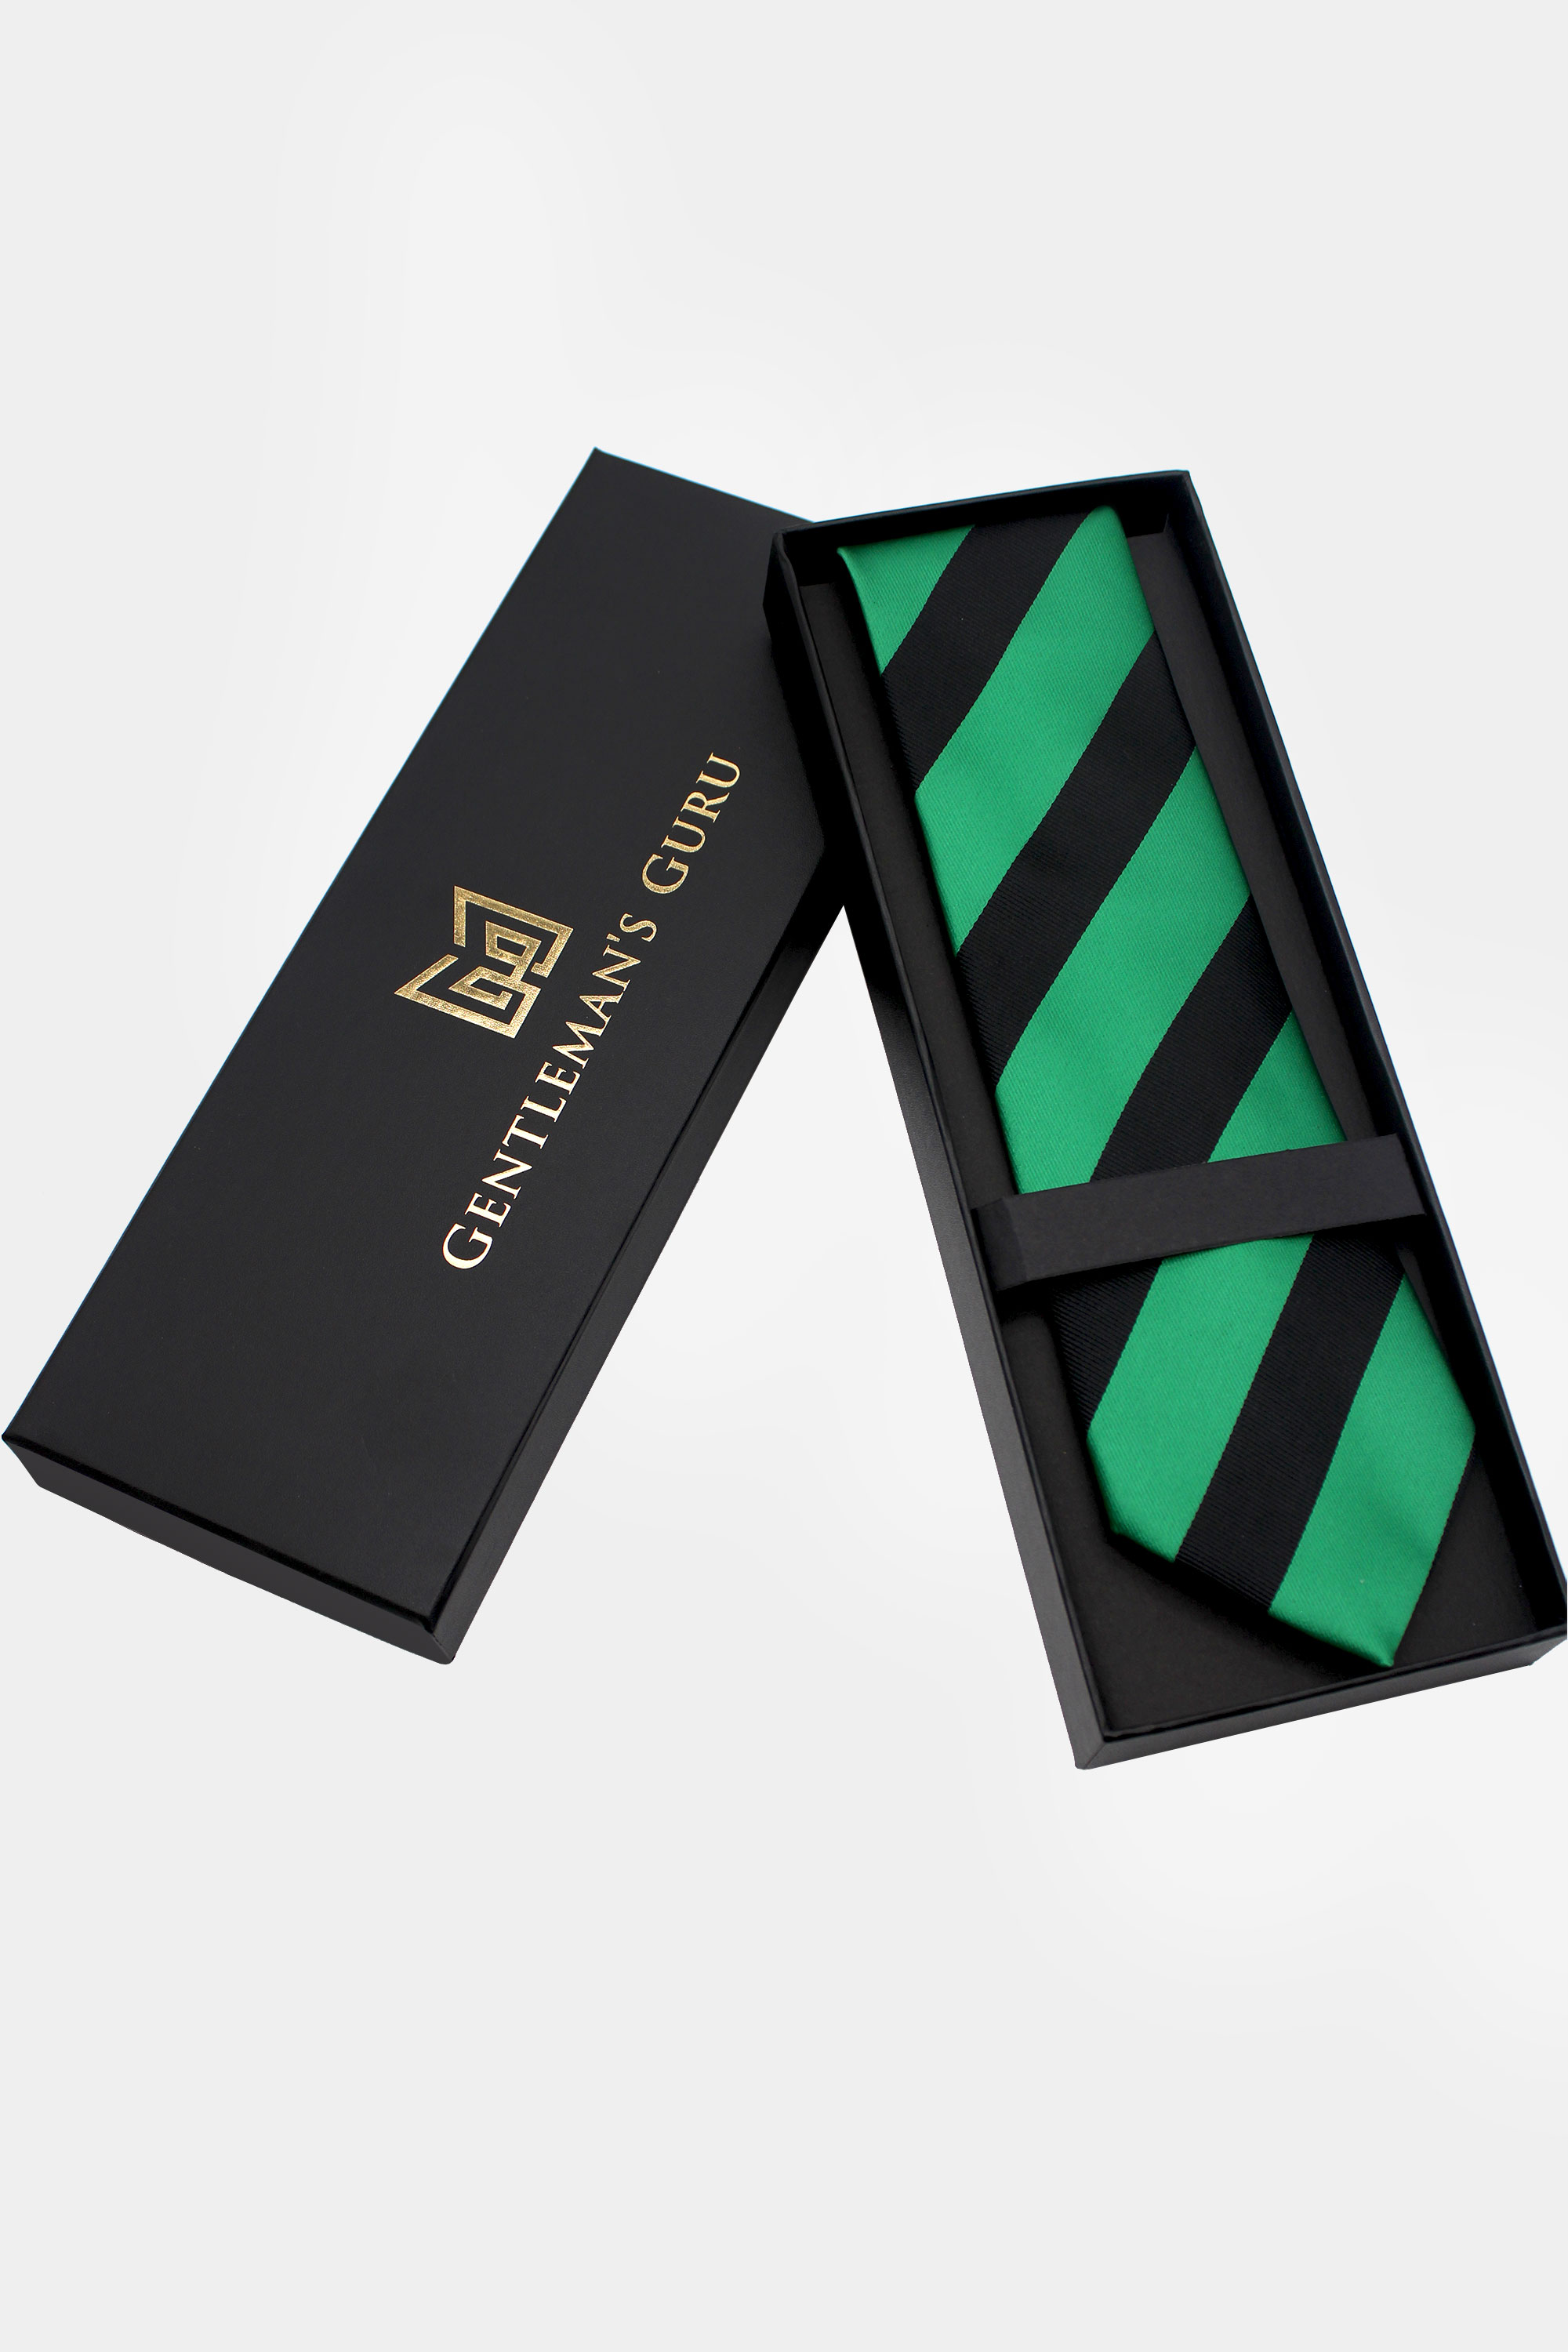 Black-and-Green-Necktie-Tie-Wedding-from-Gentlemansguru.com